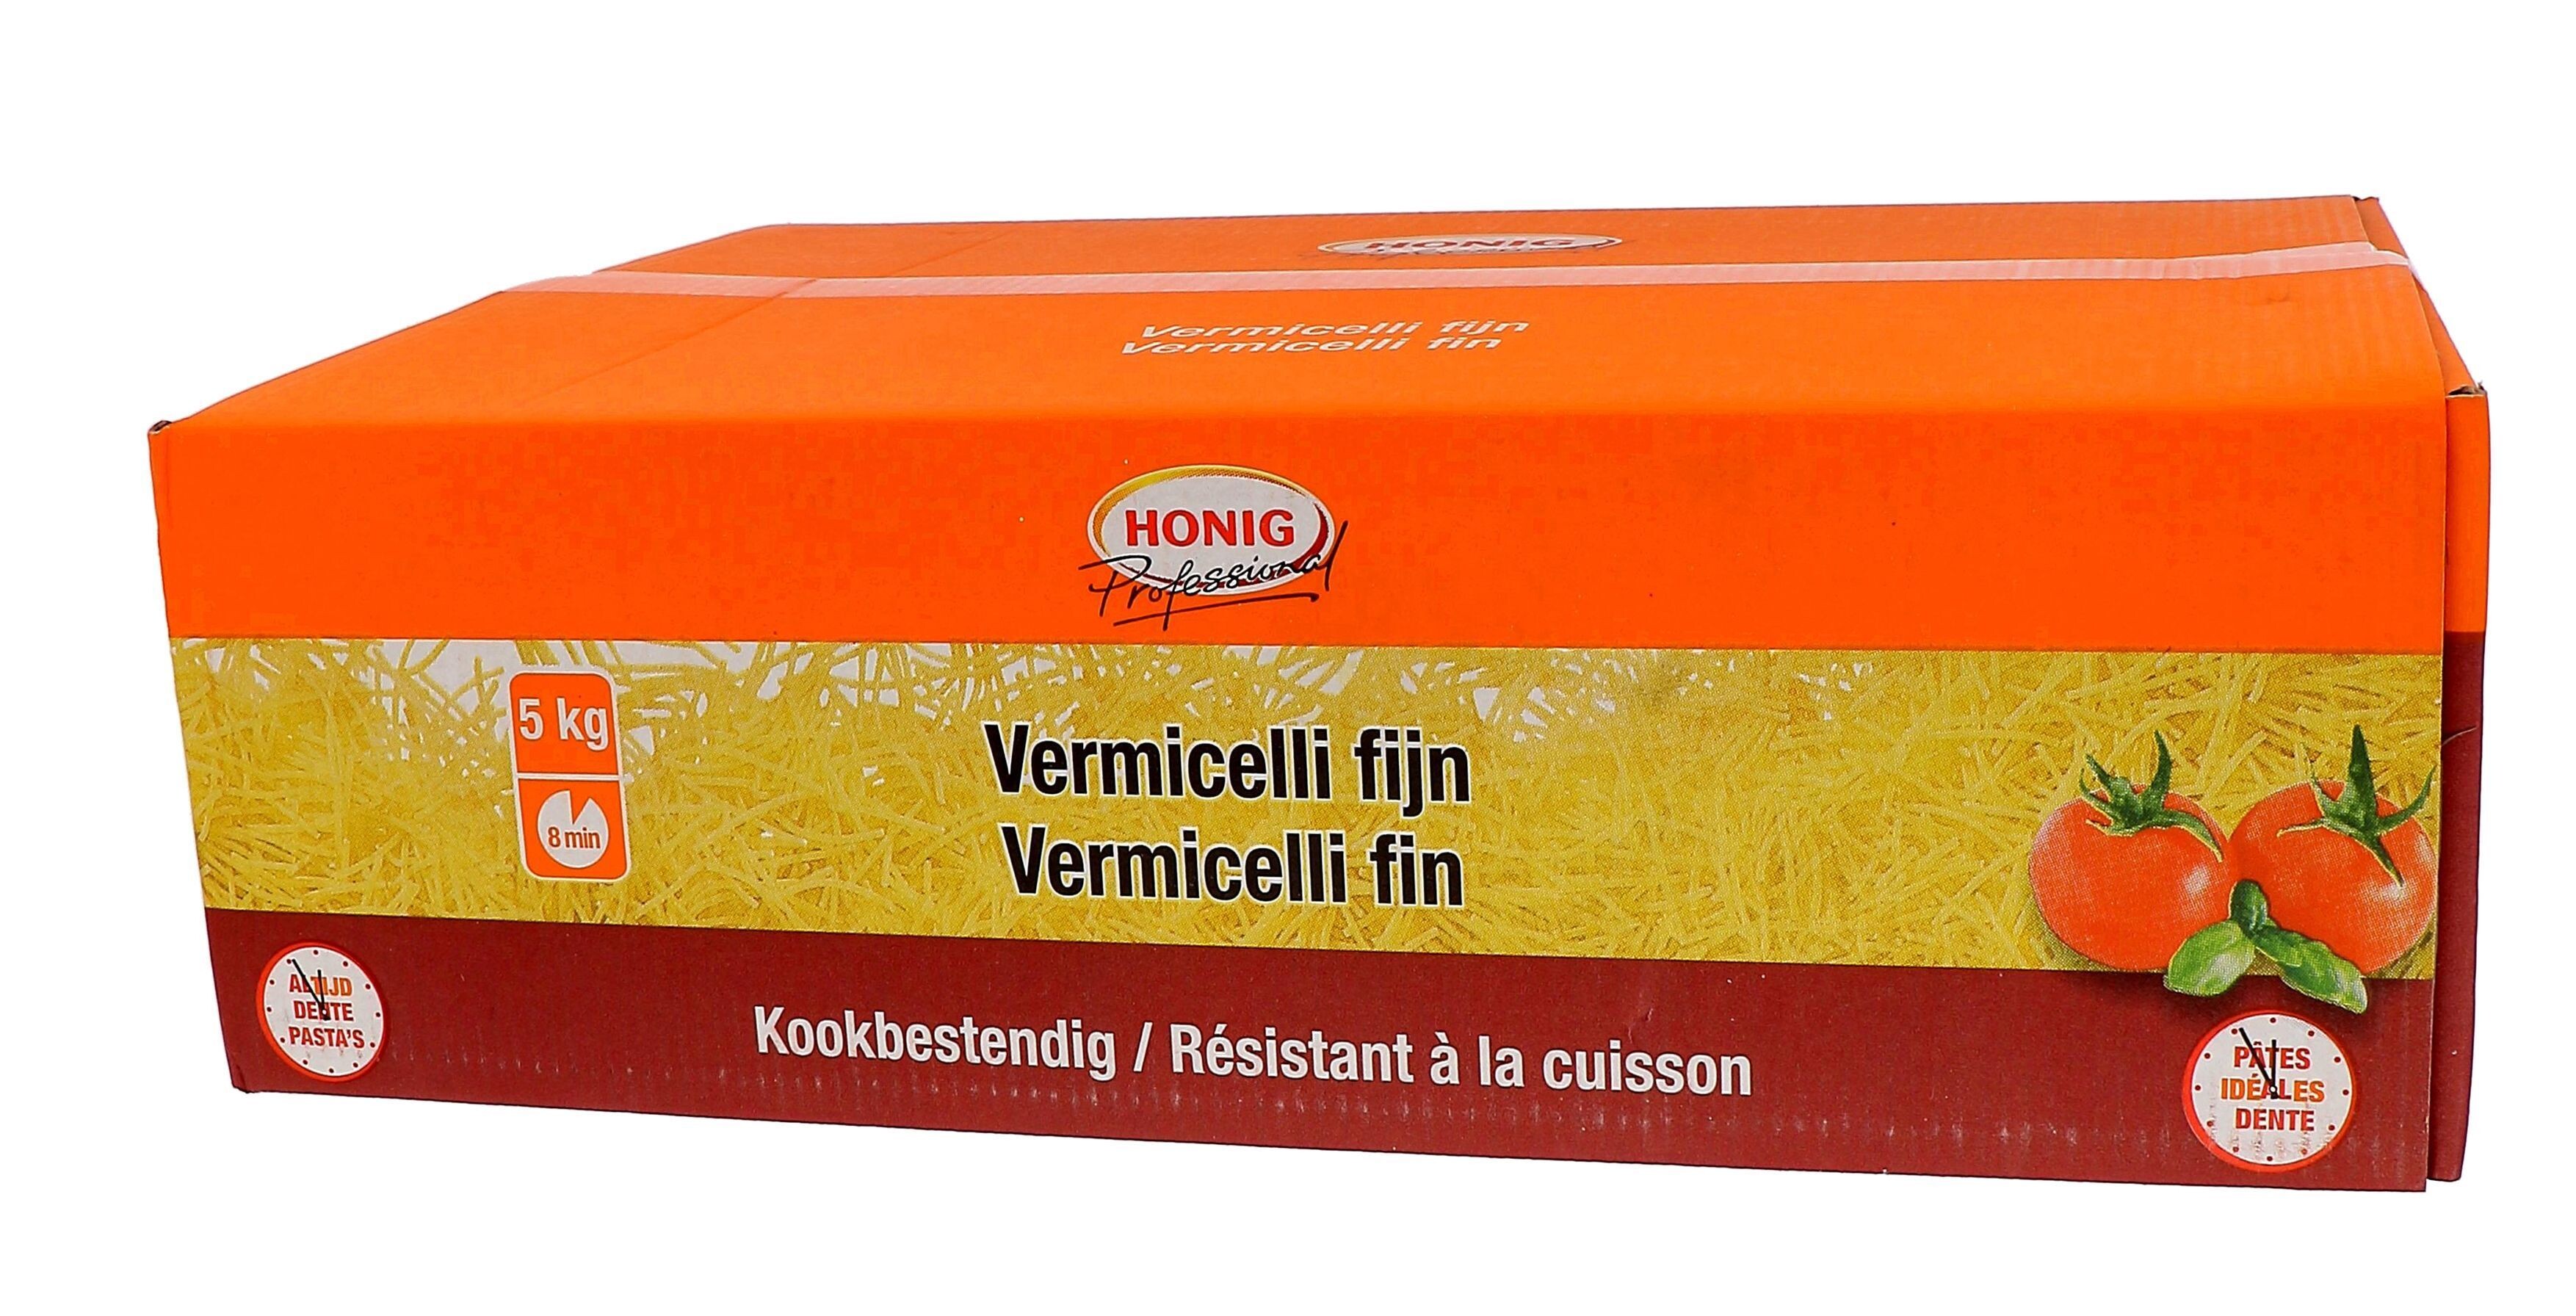 Honig pasta engelenhaar / vermicelli 5kg Professional 